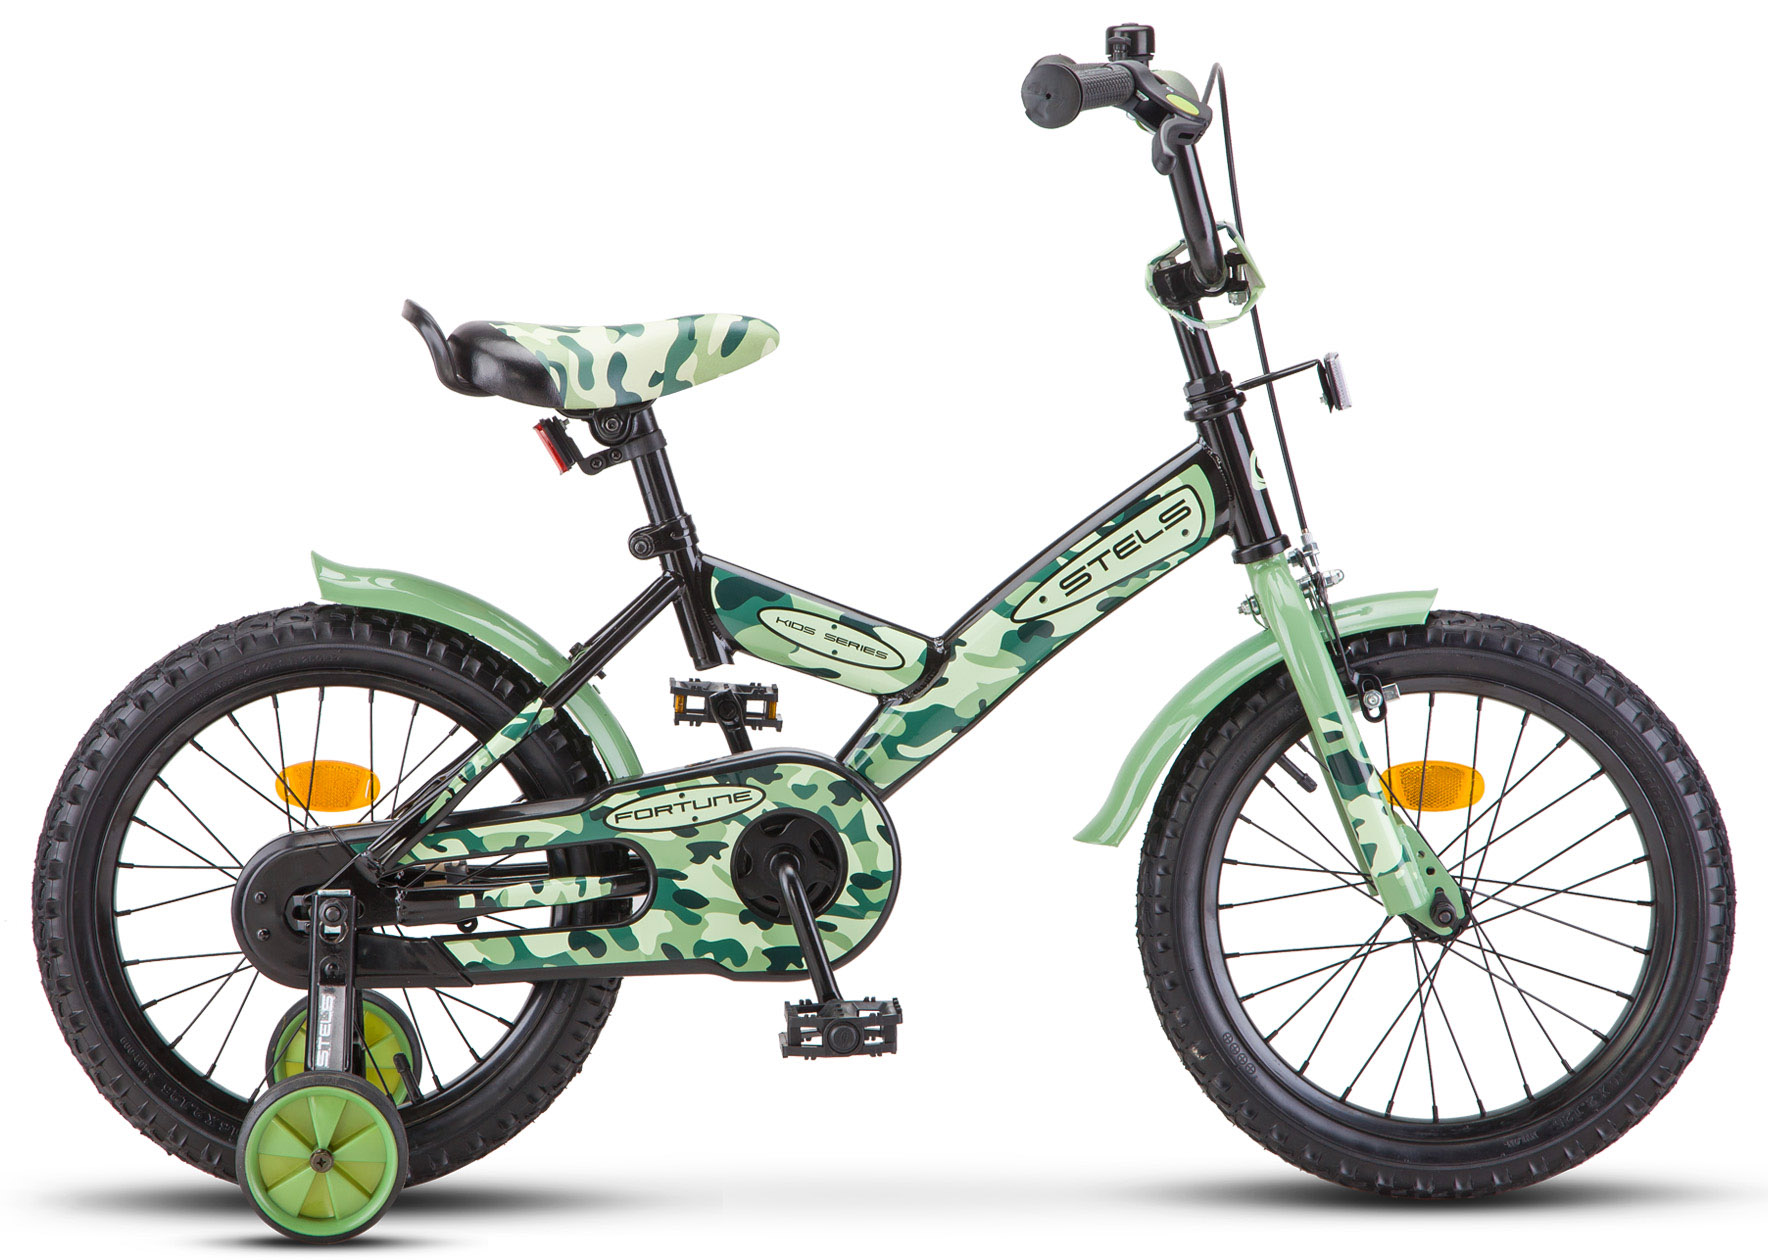  Отзывы о Детском велосипеде Stels Fortune 16 V010 2019